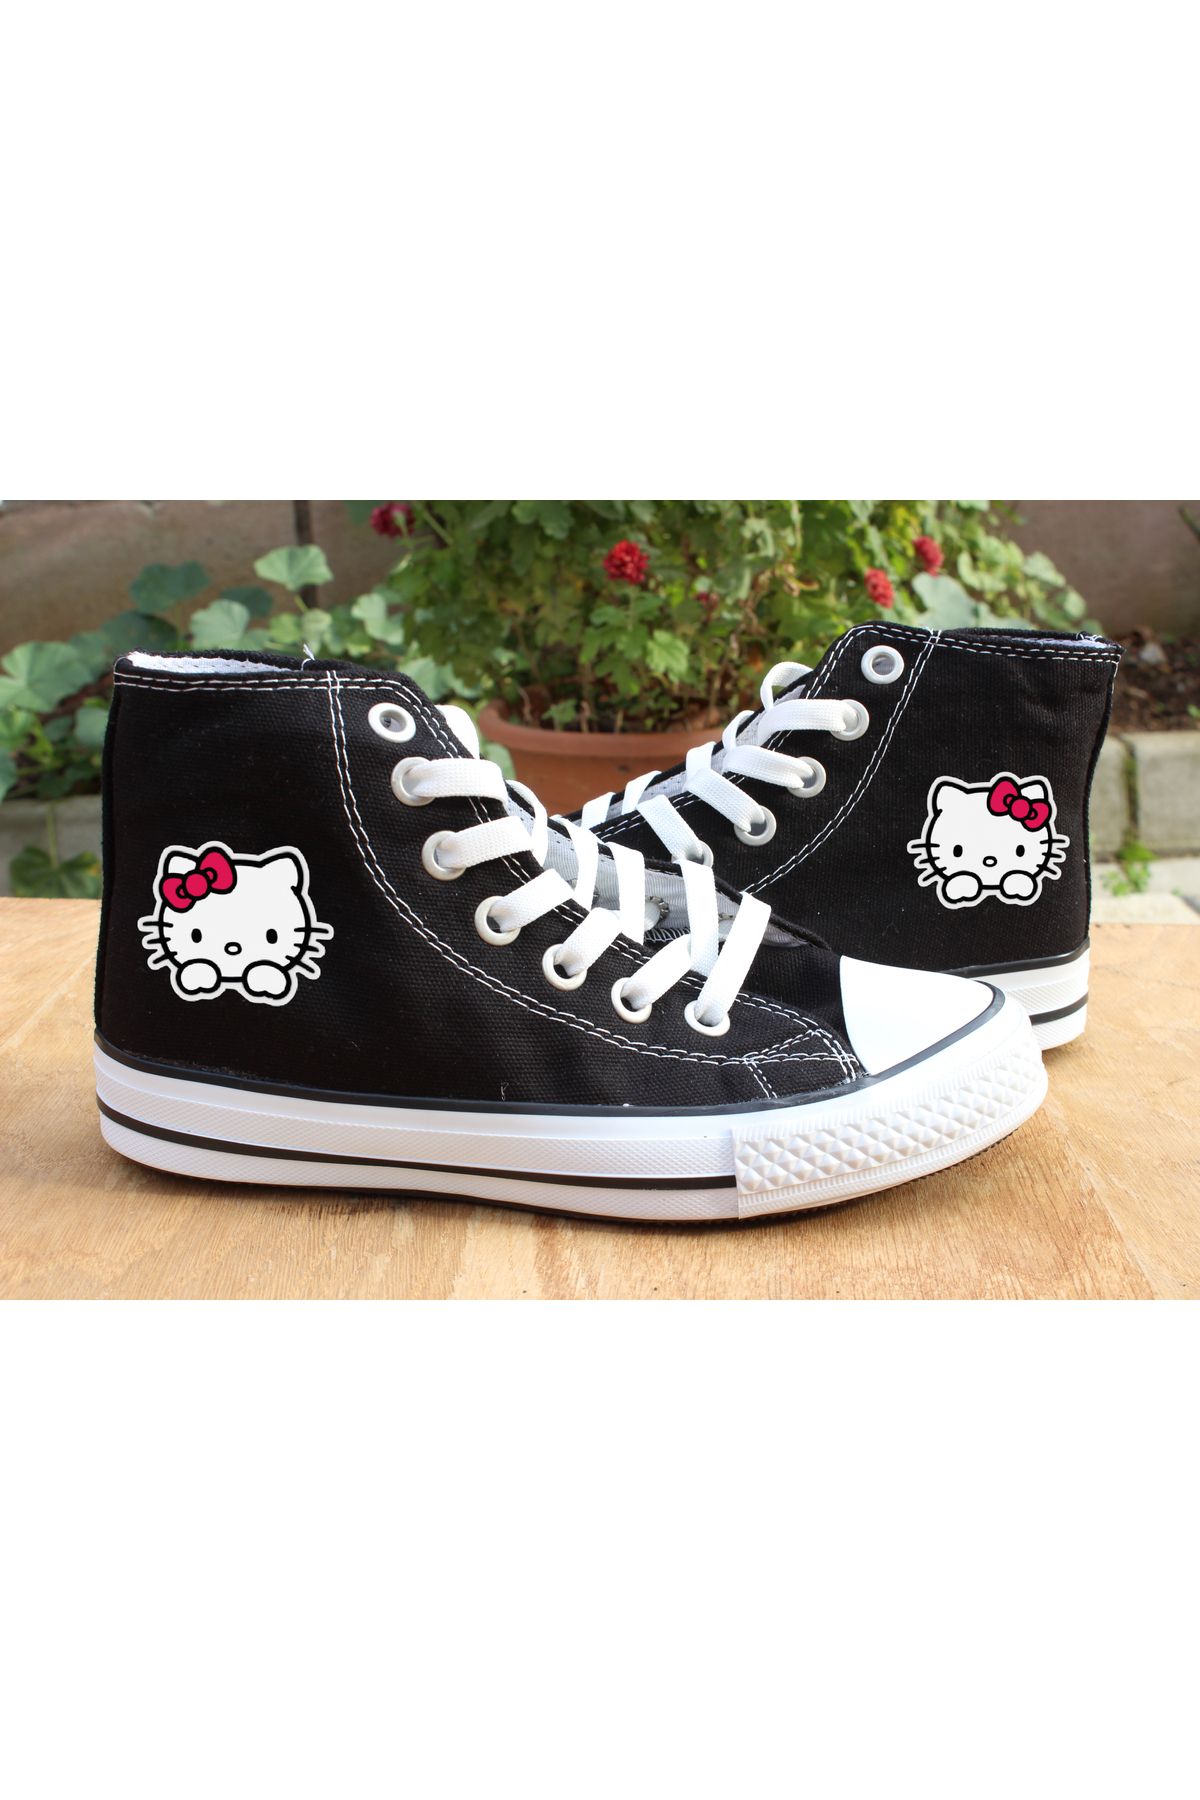 BİCRAFT Hello Kitty Unisex Siyah Kanvas Sneaker